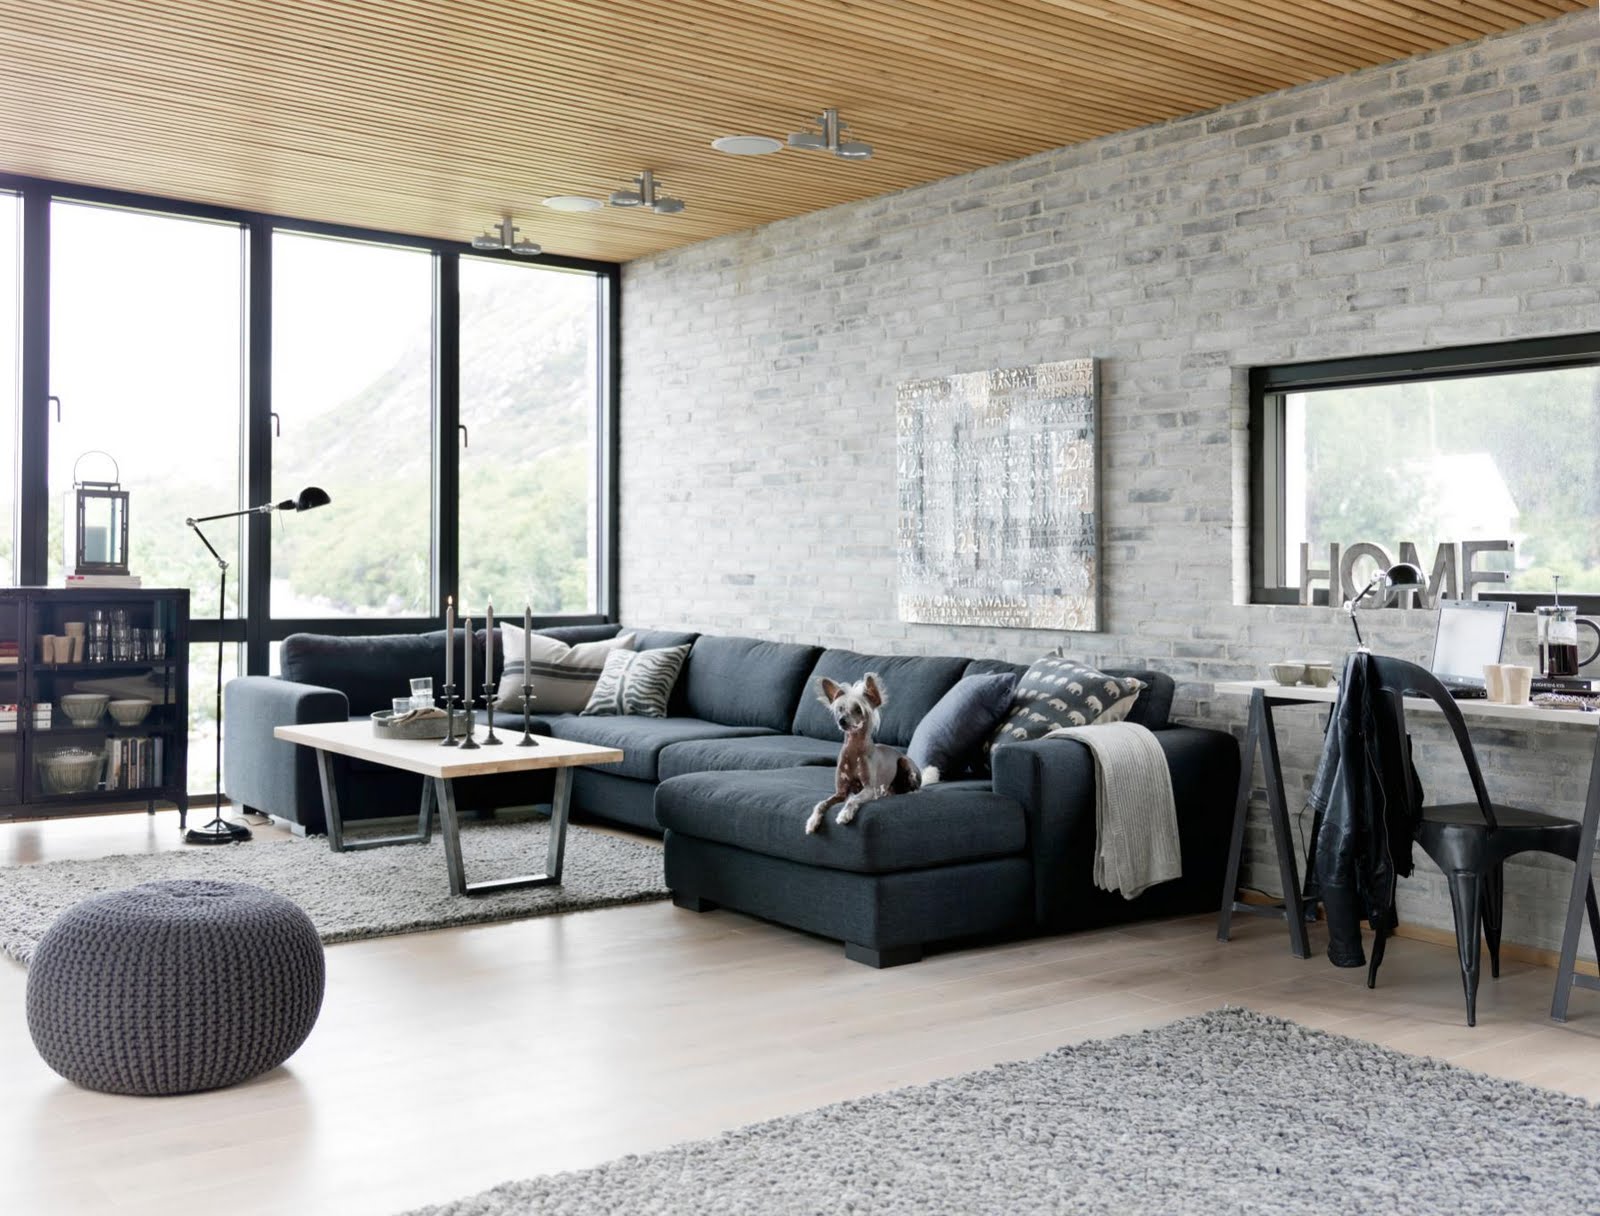 Exquisite-Industrial-Living-room-furniture